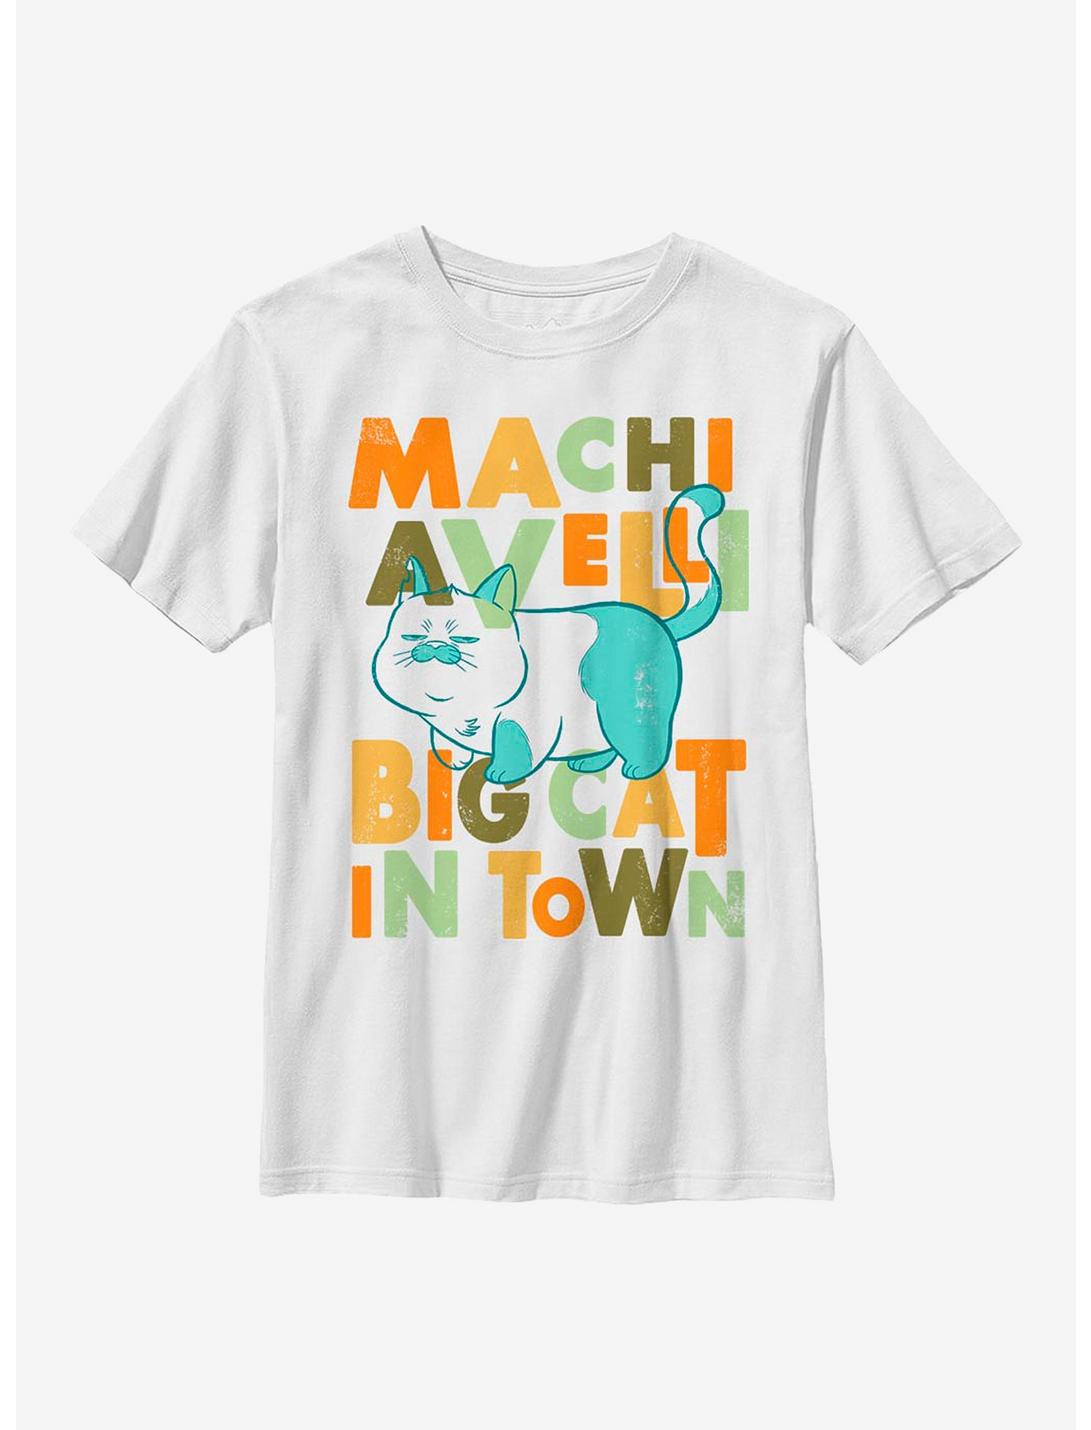 Disney Pixar Luca Machiavelli Big Cat In Town Youth T-Shirt, WHITE, hi-res